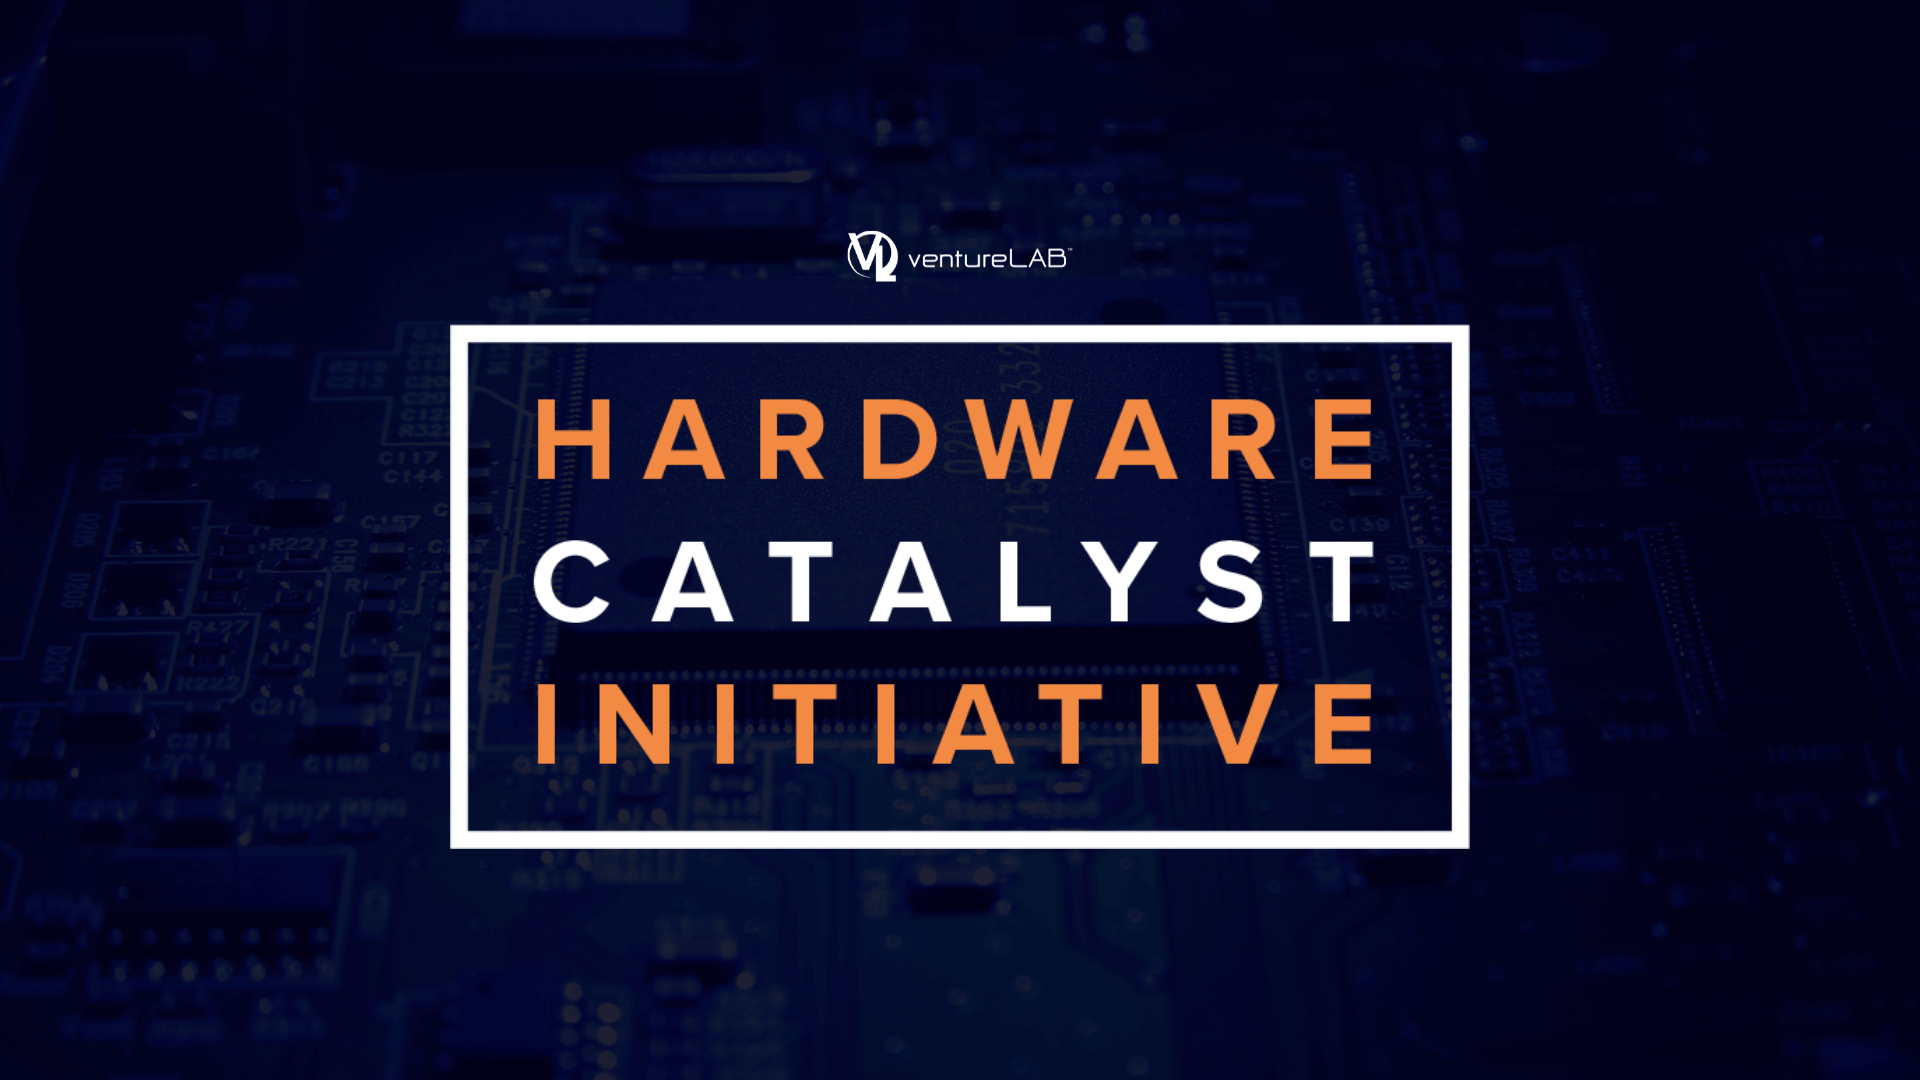 ventureLAB's Hardware Catalyst Initiative Program